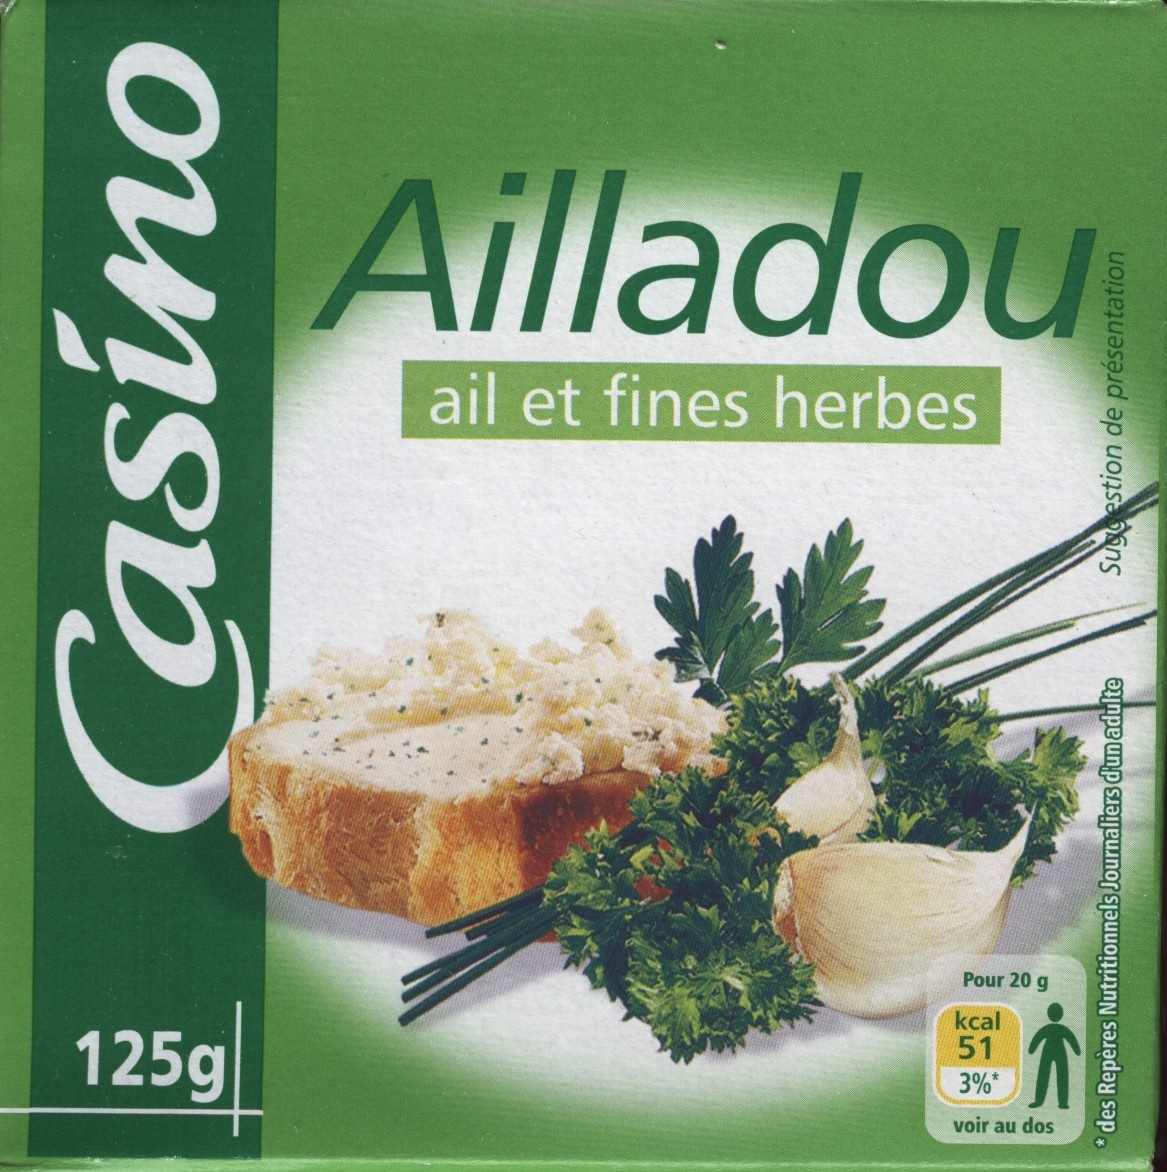 Ailladou Ail et fines herbes - Product - fr